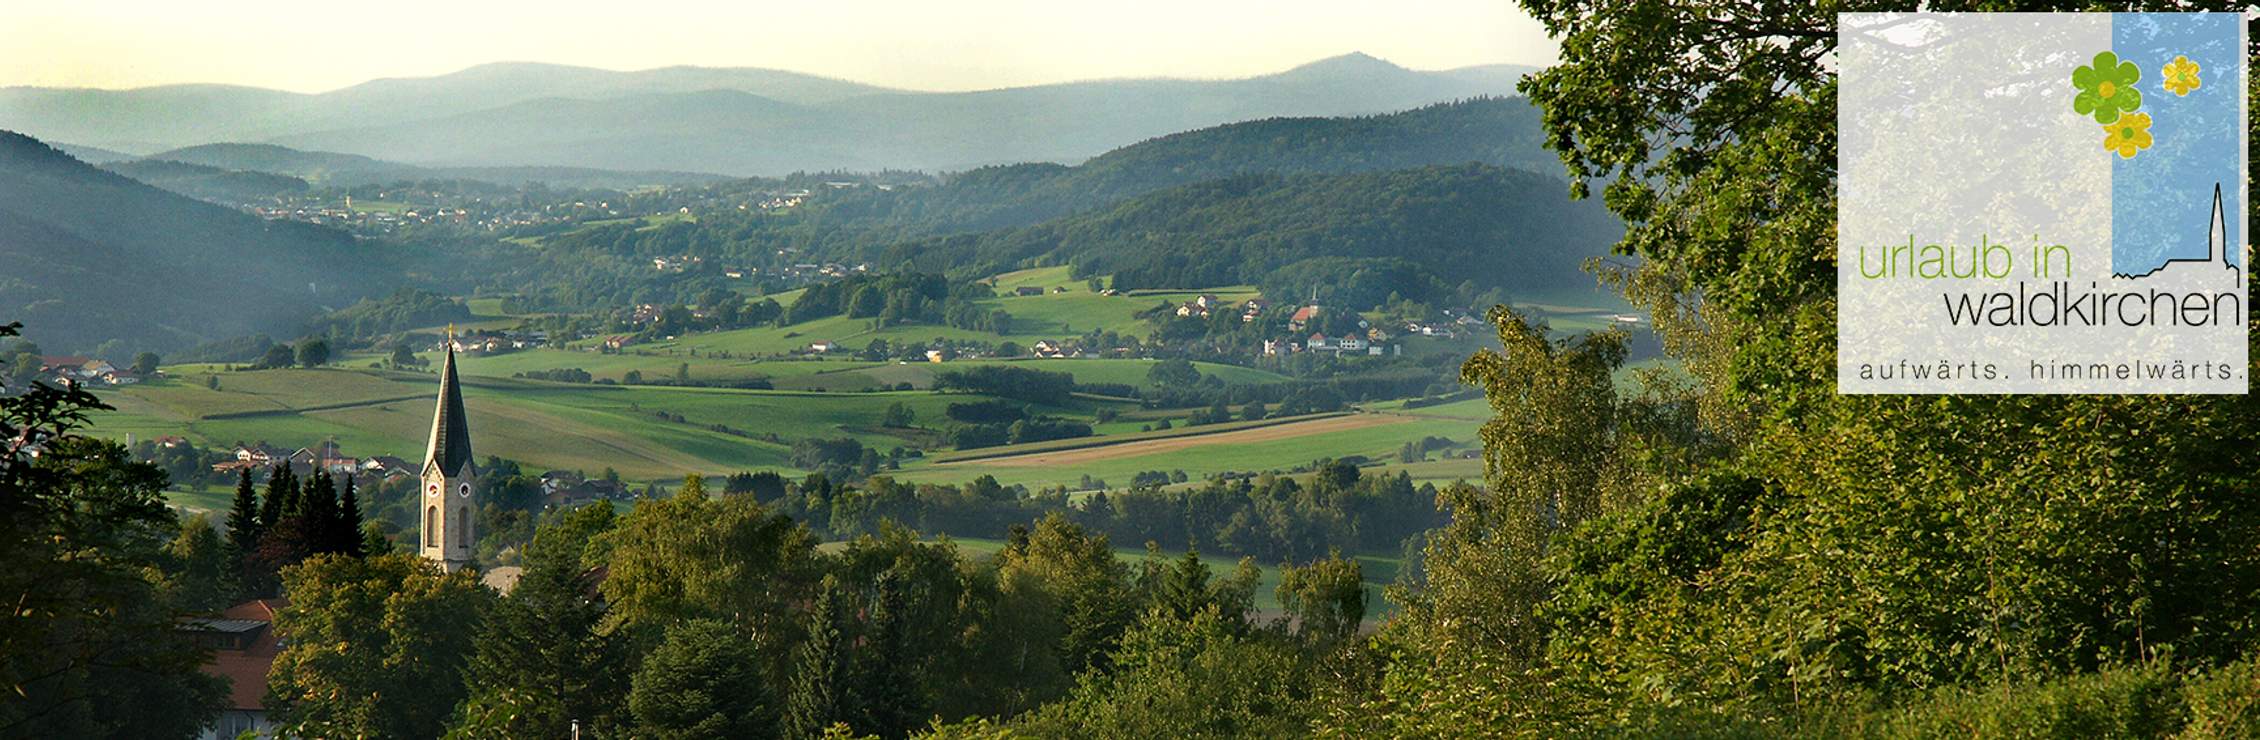 Waldkirchen – Natururlaub im Bayerischen Wald